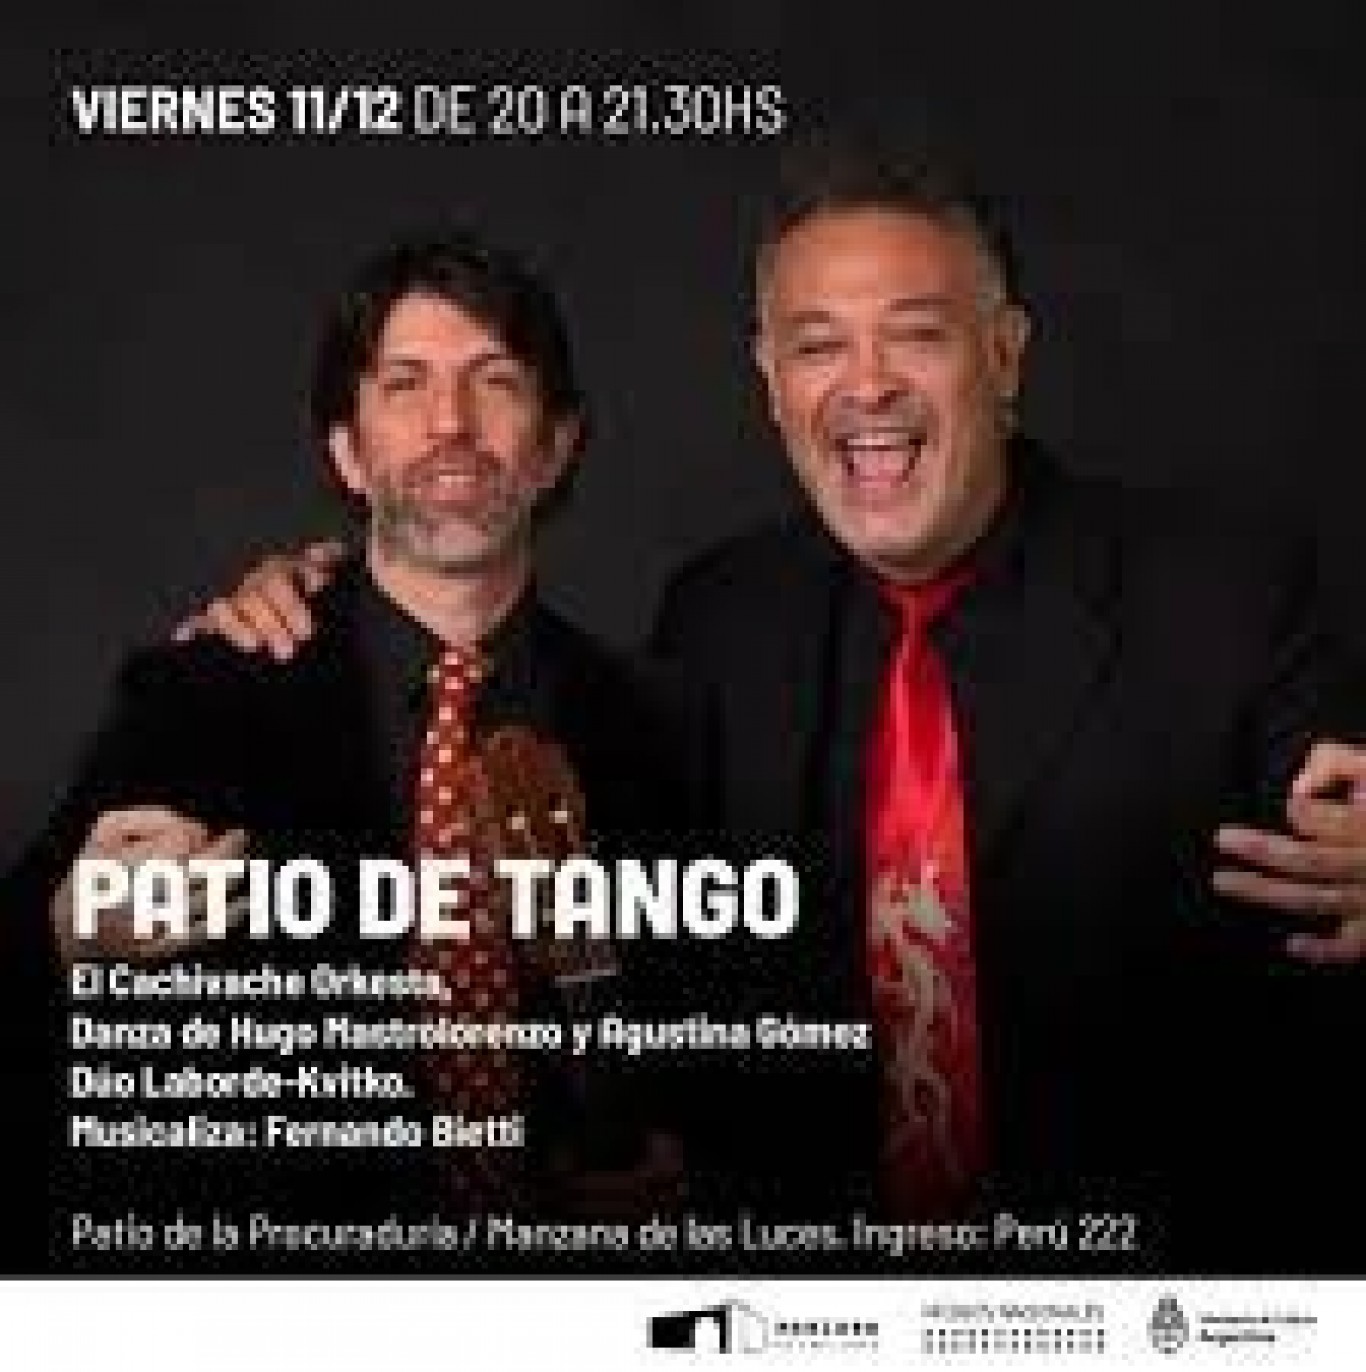 Fernando Bietti: "Recién ahora sentimos que hay un movimiento de electro tango"